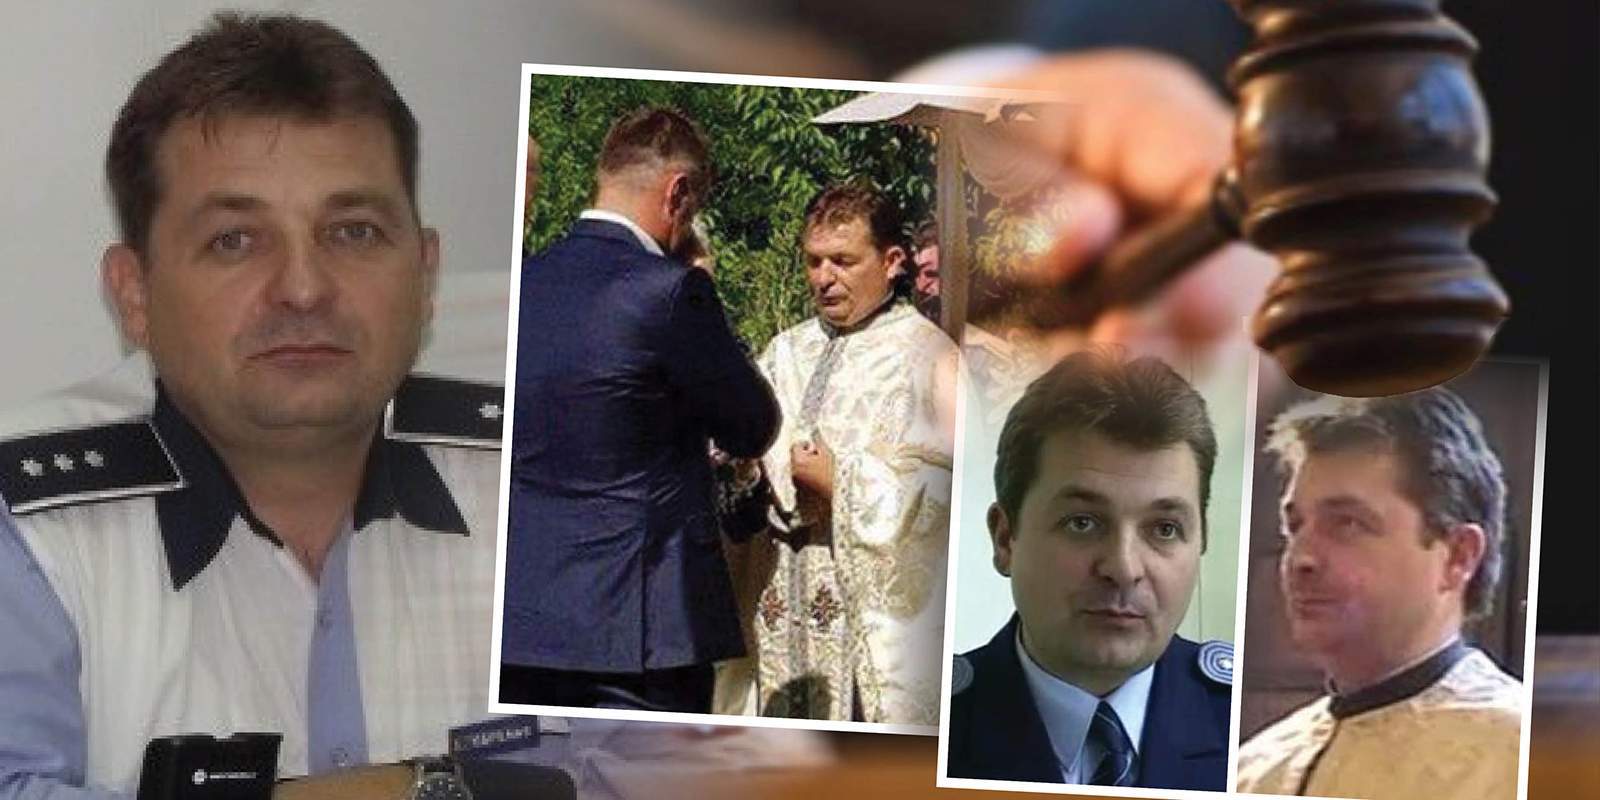 Șeful din Poliția Română care a condus 20 de ani fără permis, din nou în fața judecătorilor / Cine l-a chemat în fața instanței!